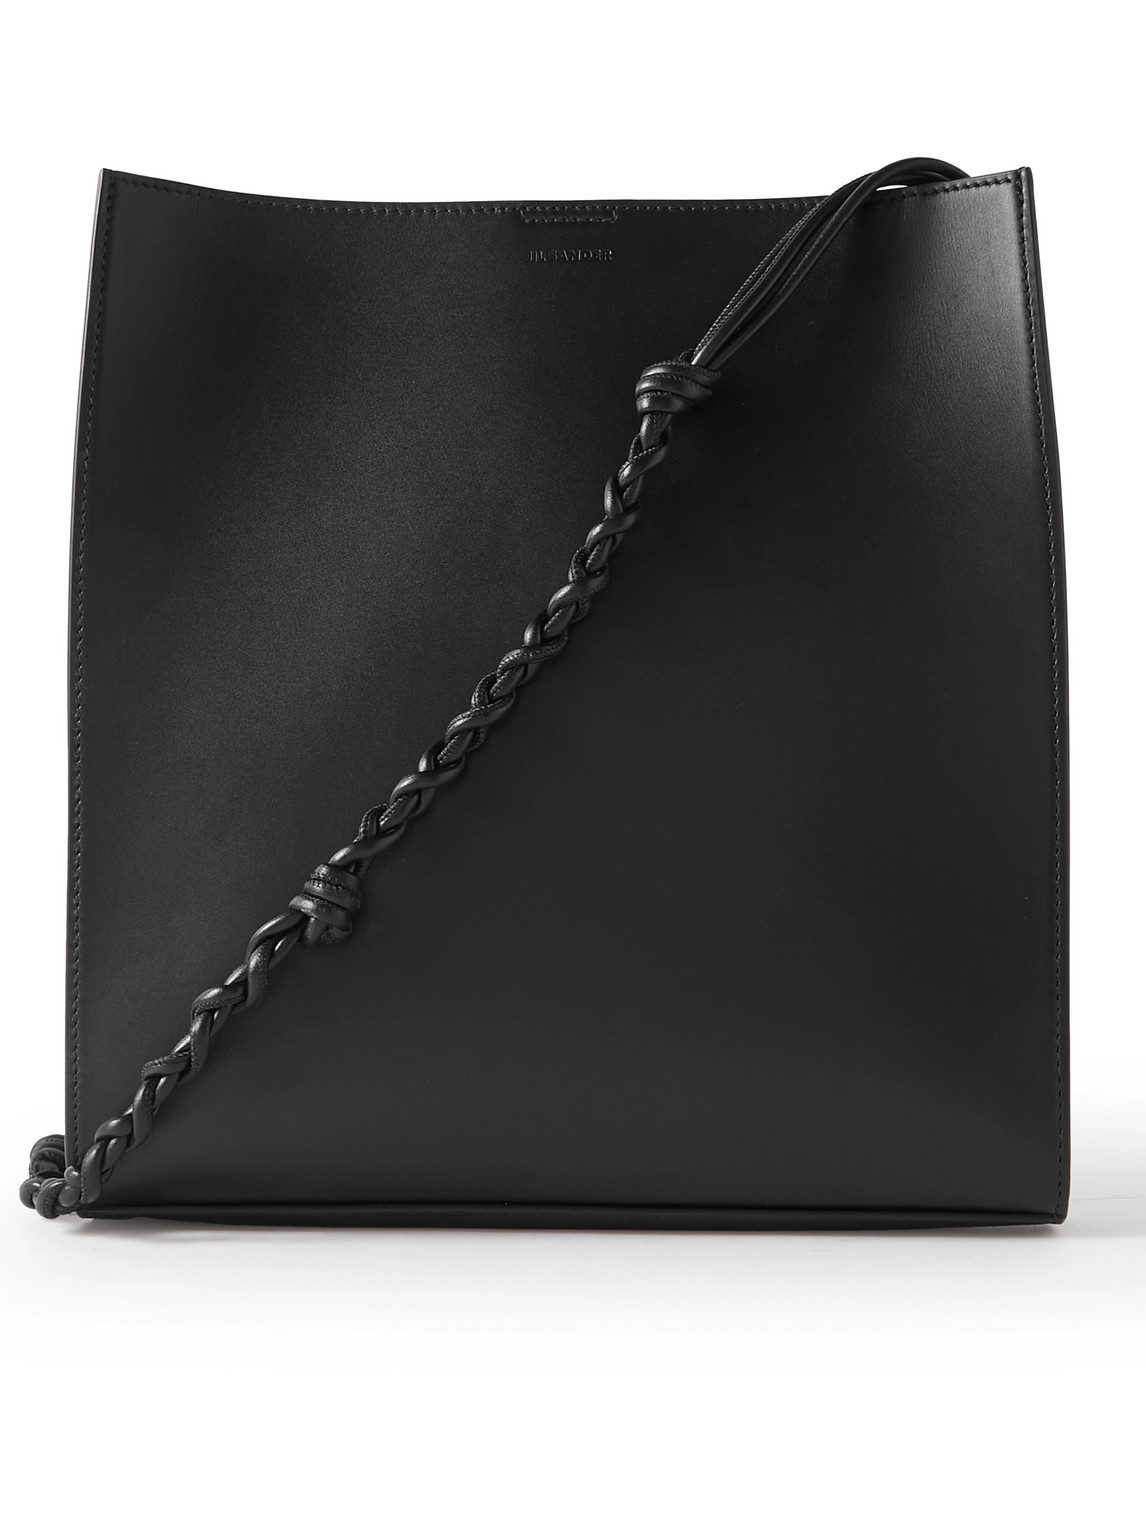 Jil Sander Tangle Medium Leather Messenger Bag In Black